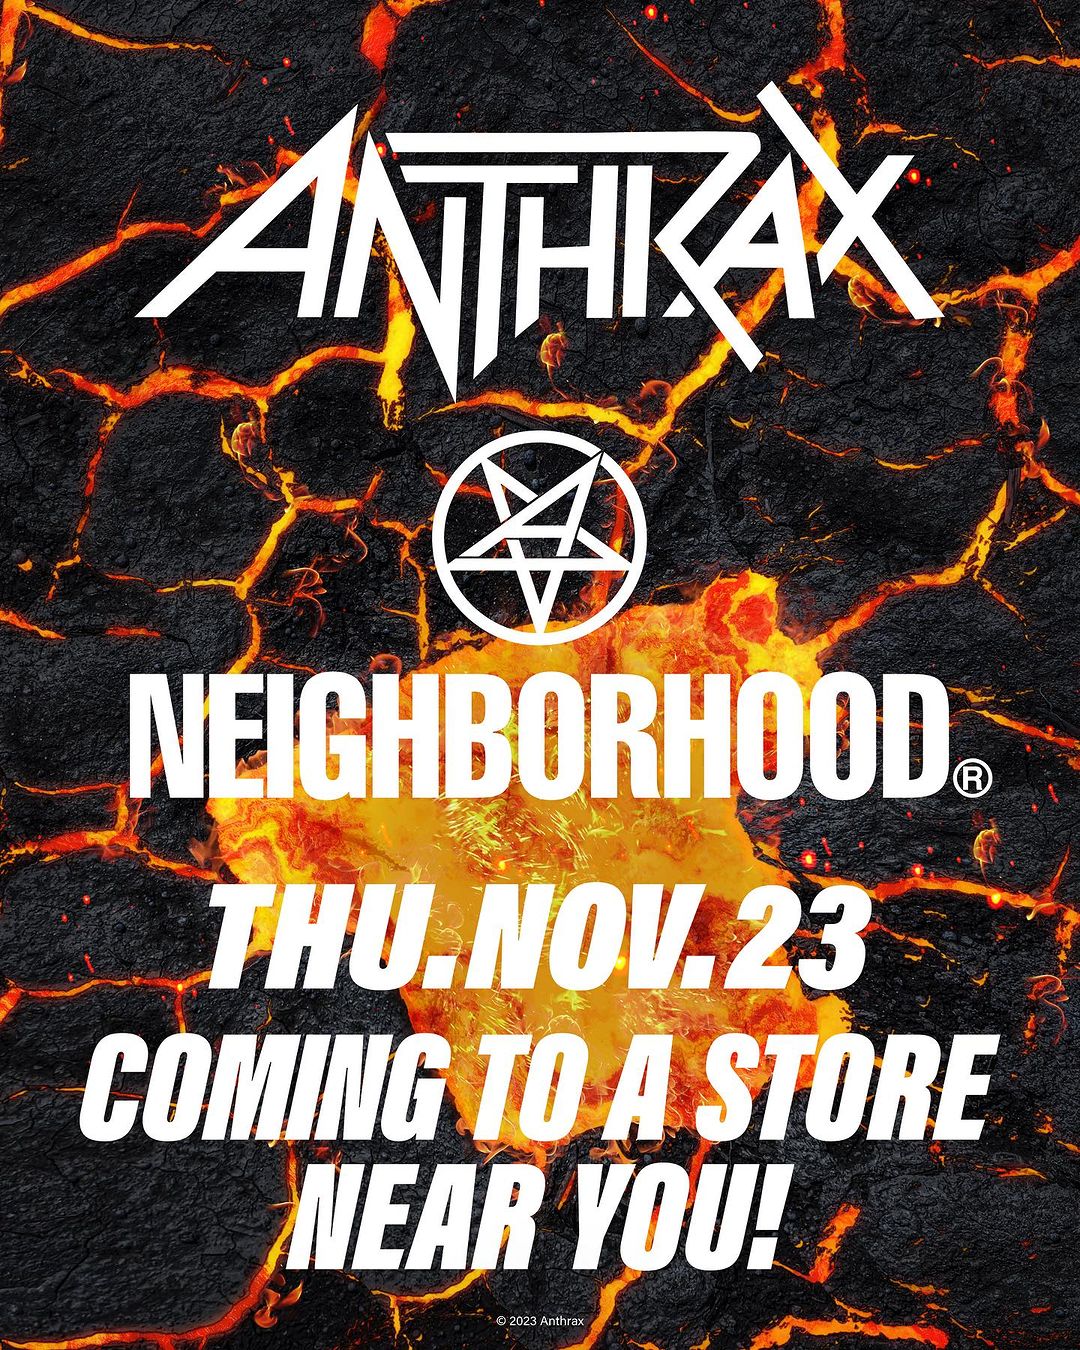 NEIGHBORHOOD x アメリカのヘヴィメタル・バンド「ANTHRAX」が11/23 発売 (ネイバーフッド アンスラックス)